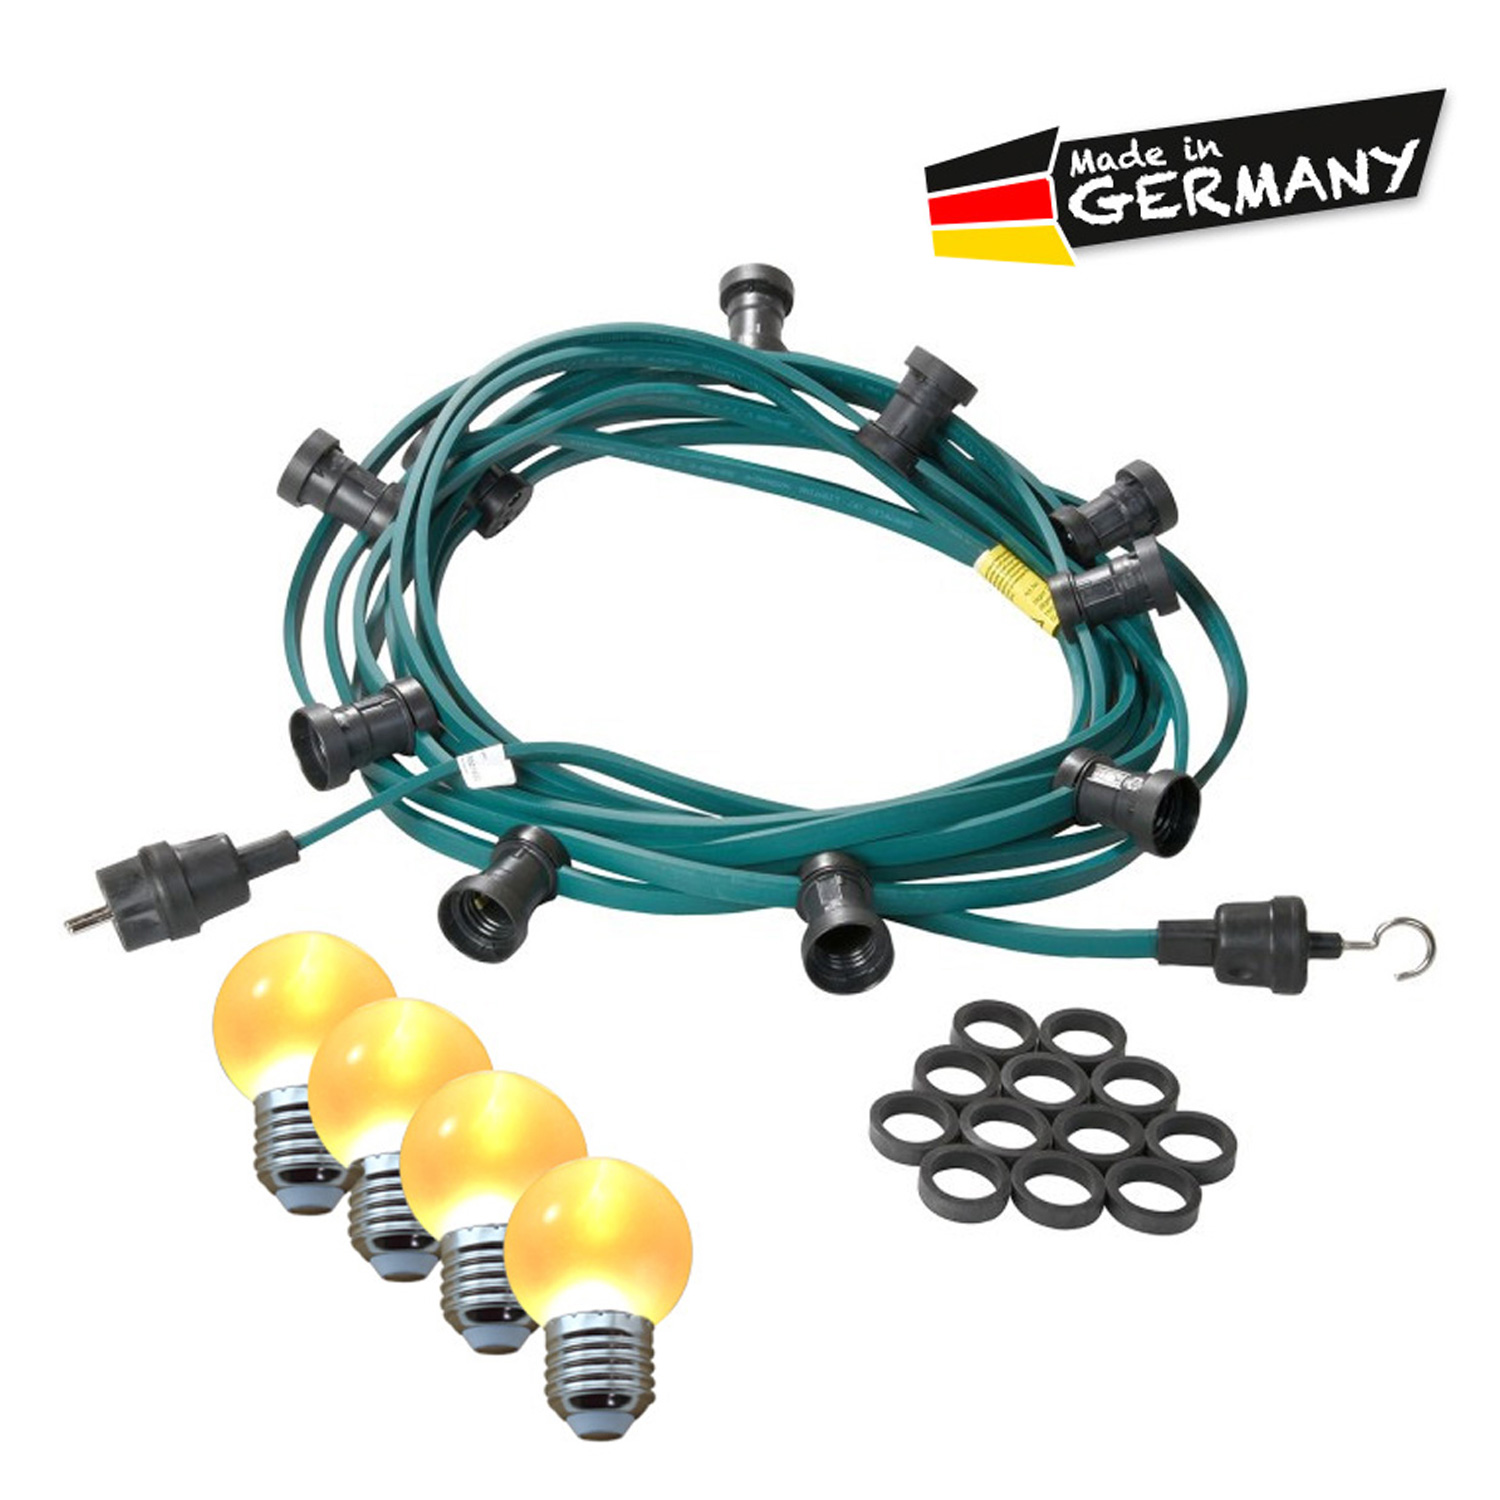 Illu-/Partylichterkette 20m | Außenlichterkette | Made in Germany | 20 x ultra-warmweisse LED Kugeln